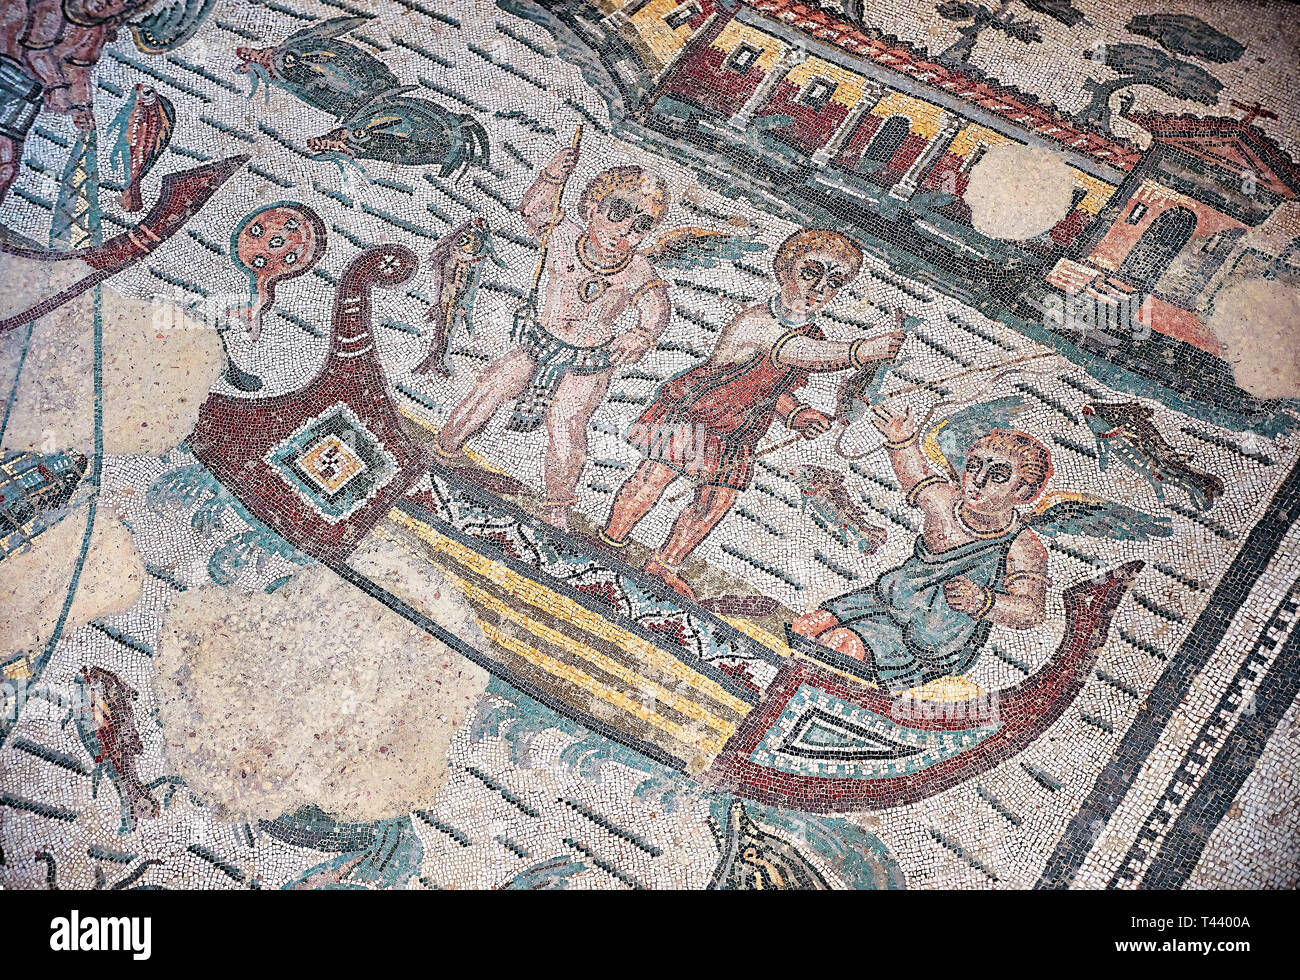 Dettaglio di un Mosaico romano dalla camera della pesca Amorini, sala 24, presso la Villa Romana del Casale, primo quarto del secolo IV D.C. Sicilia, Foto Stock